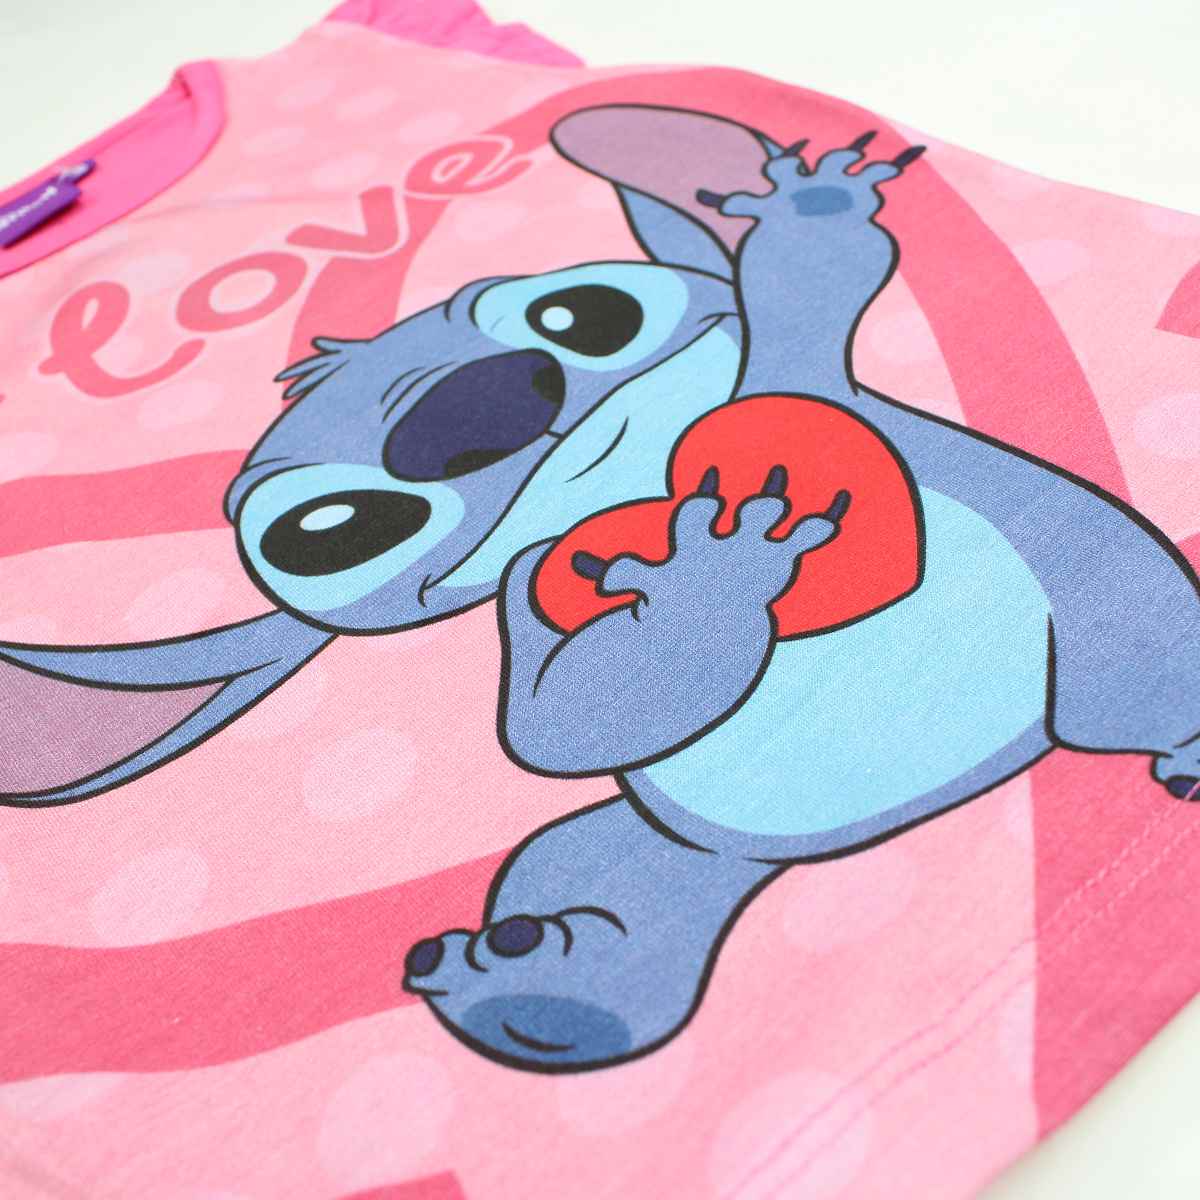 Disney Stitch Trägerloses Shirt mit Rüschen am Armausschnitt